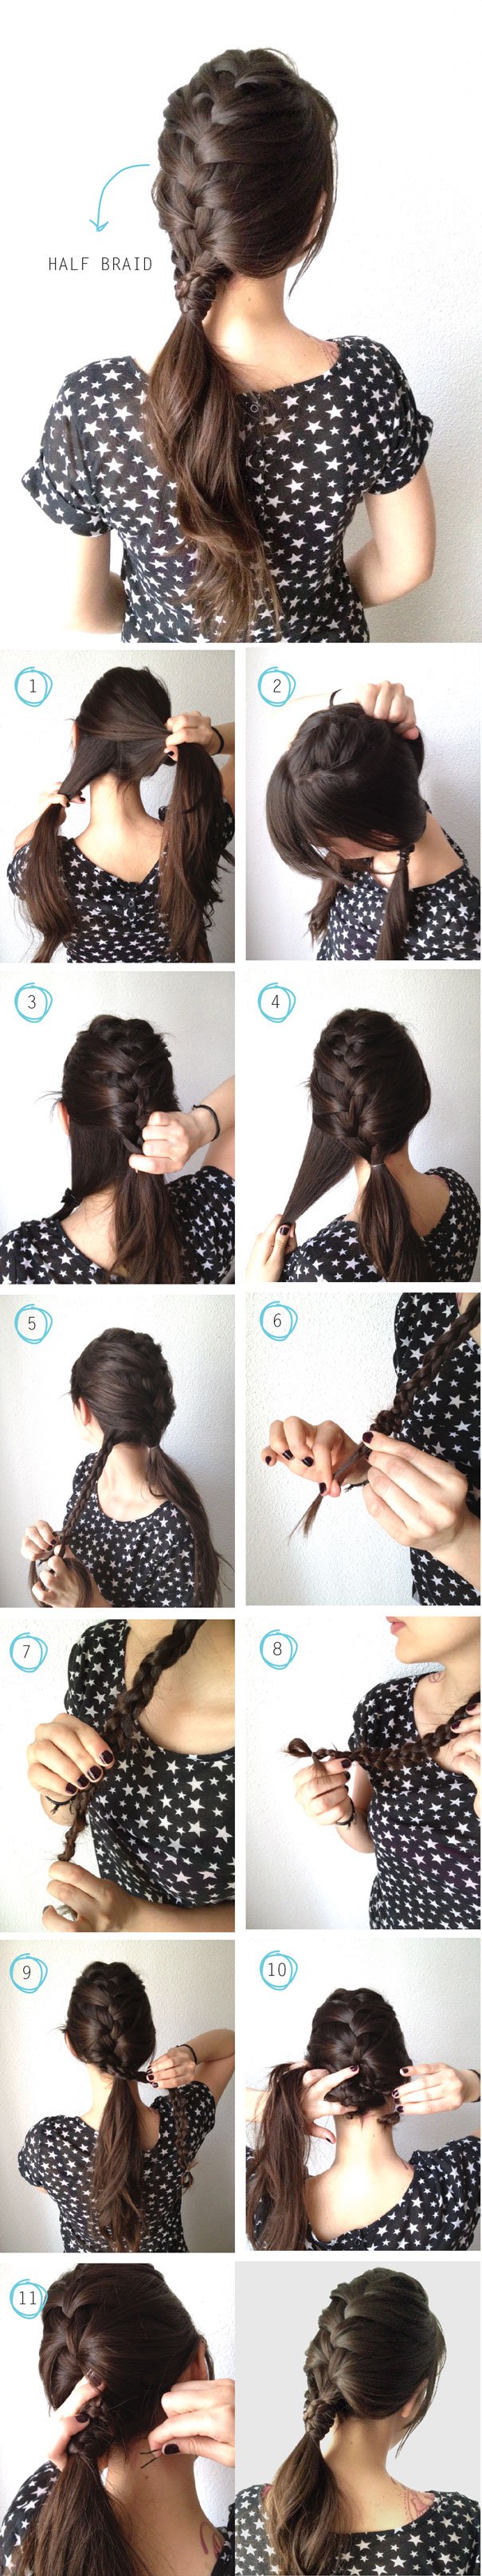 Half braid ponytail